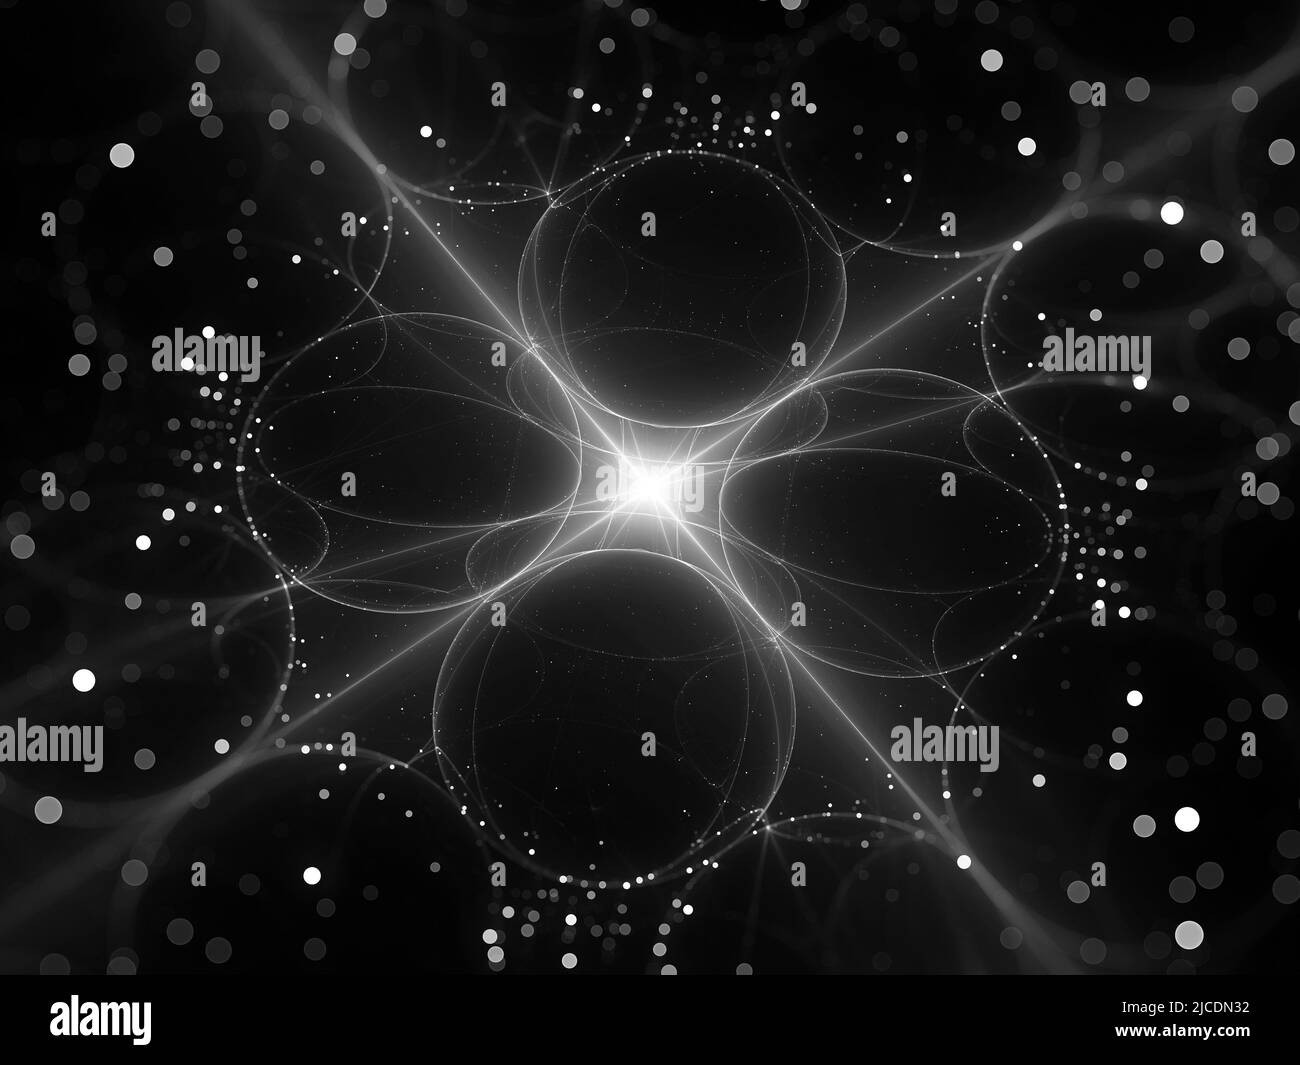 Processeur quantique futuriste lumineux, carte d'intensité abstraite générée par ordinateur, noir et blanc, rendu 3D Banque D'Images